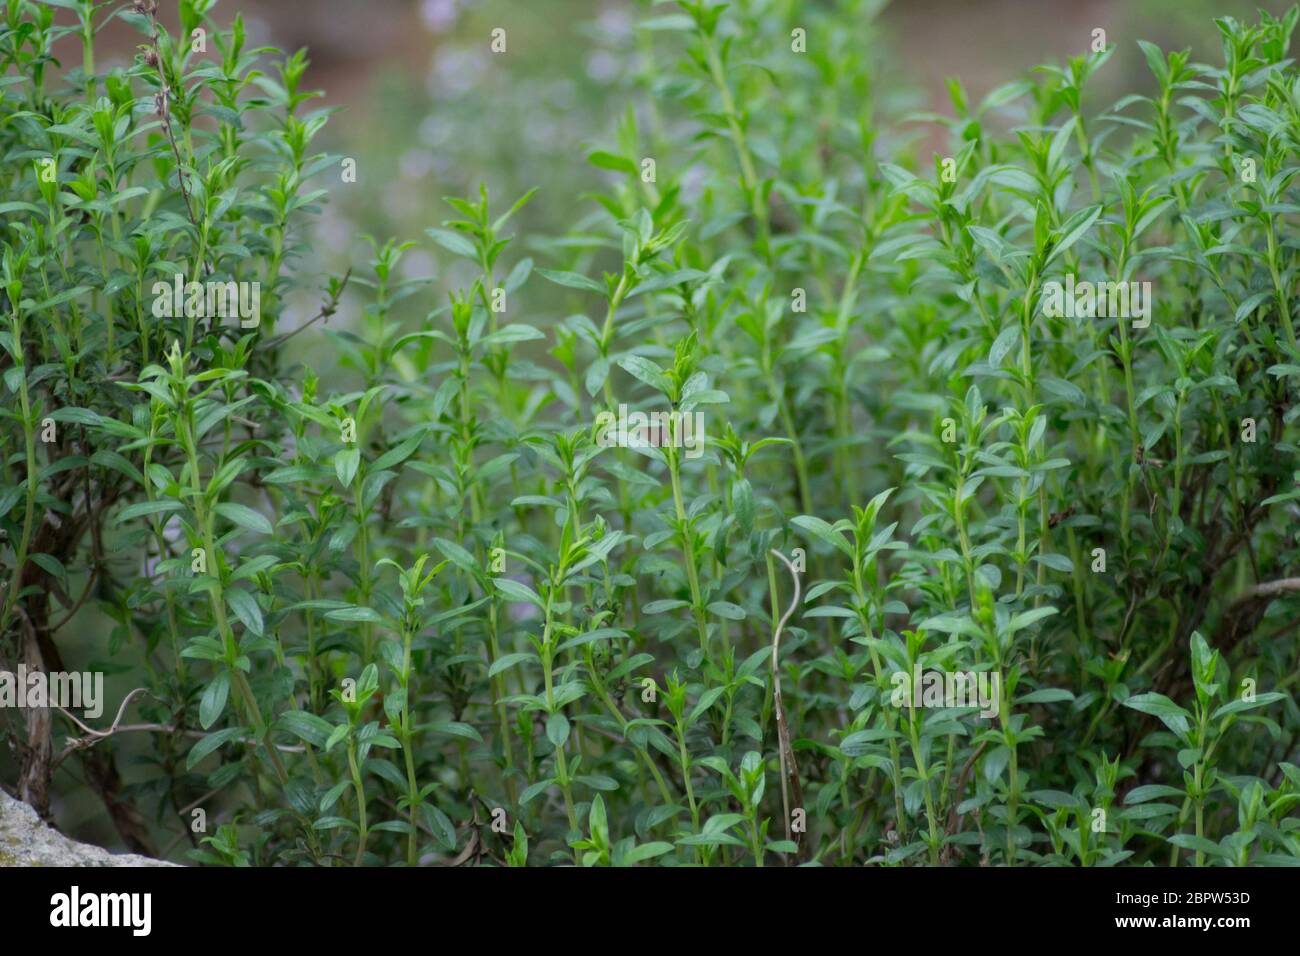 Herbes de montagne salées ou Satureja montana dans le jardin, feuilles vertes, cadre plein, plante comestible à base de plantes pour l'assaisonnement Banque D'Images